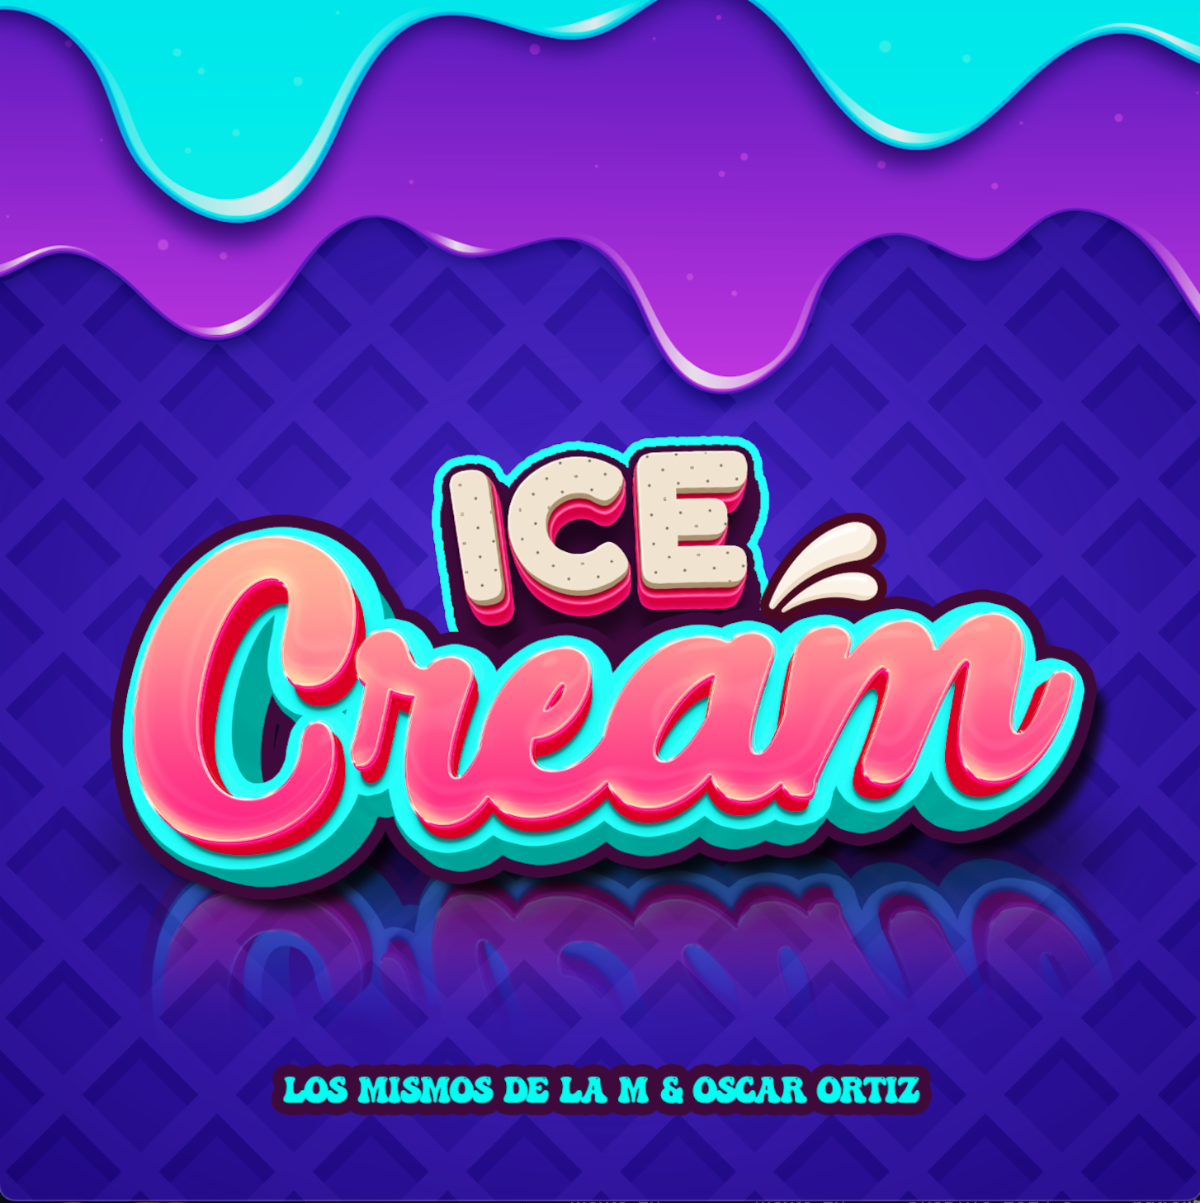 LOS MISMOS DE LA M se unen a Oscar Ortiz en sencillo “Ice Cream”